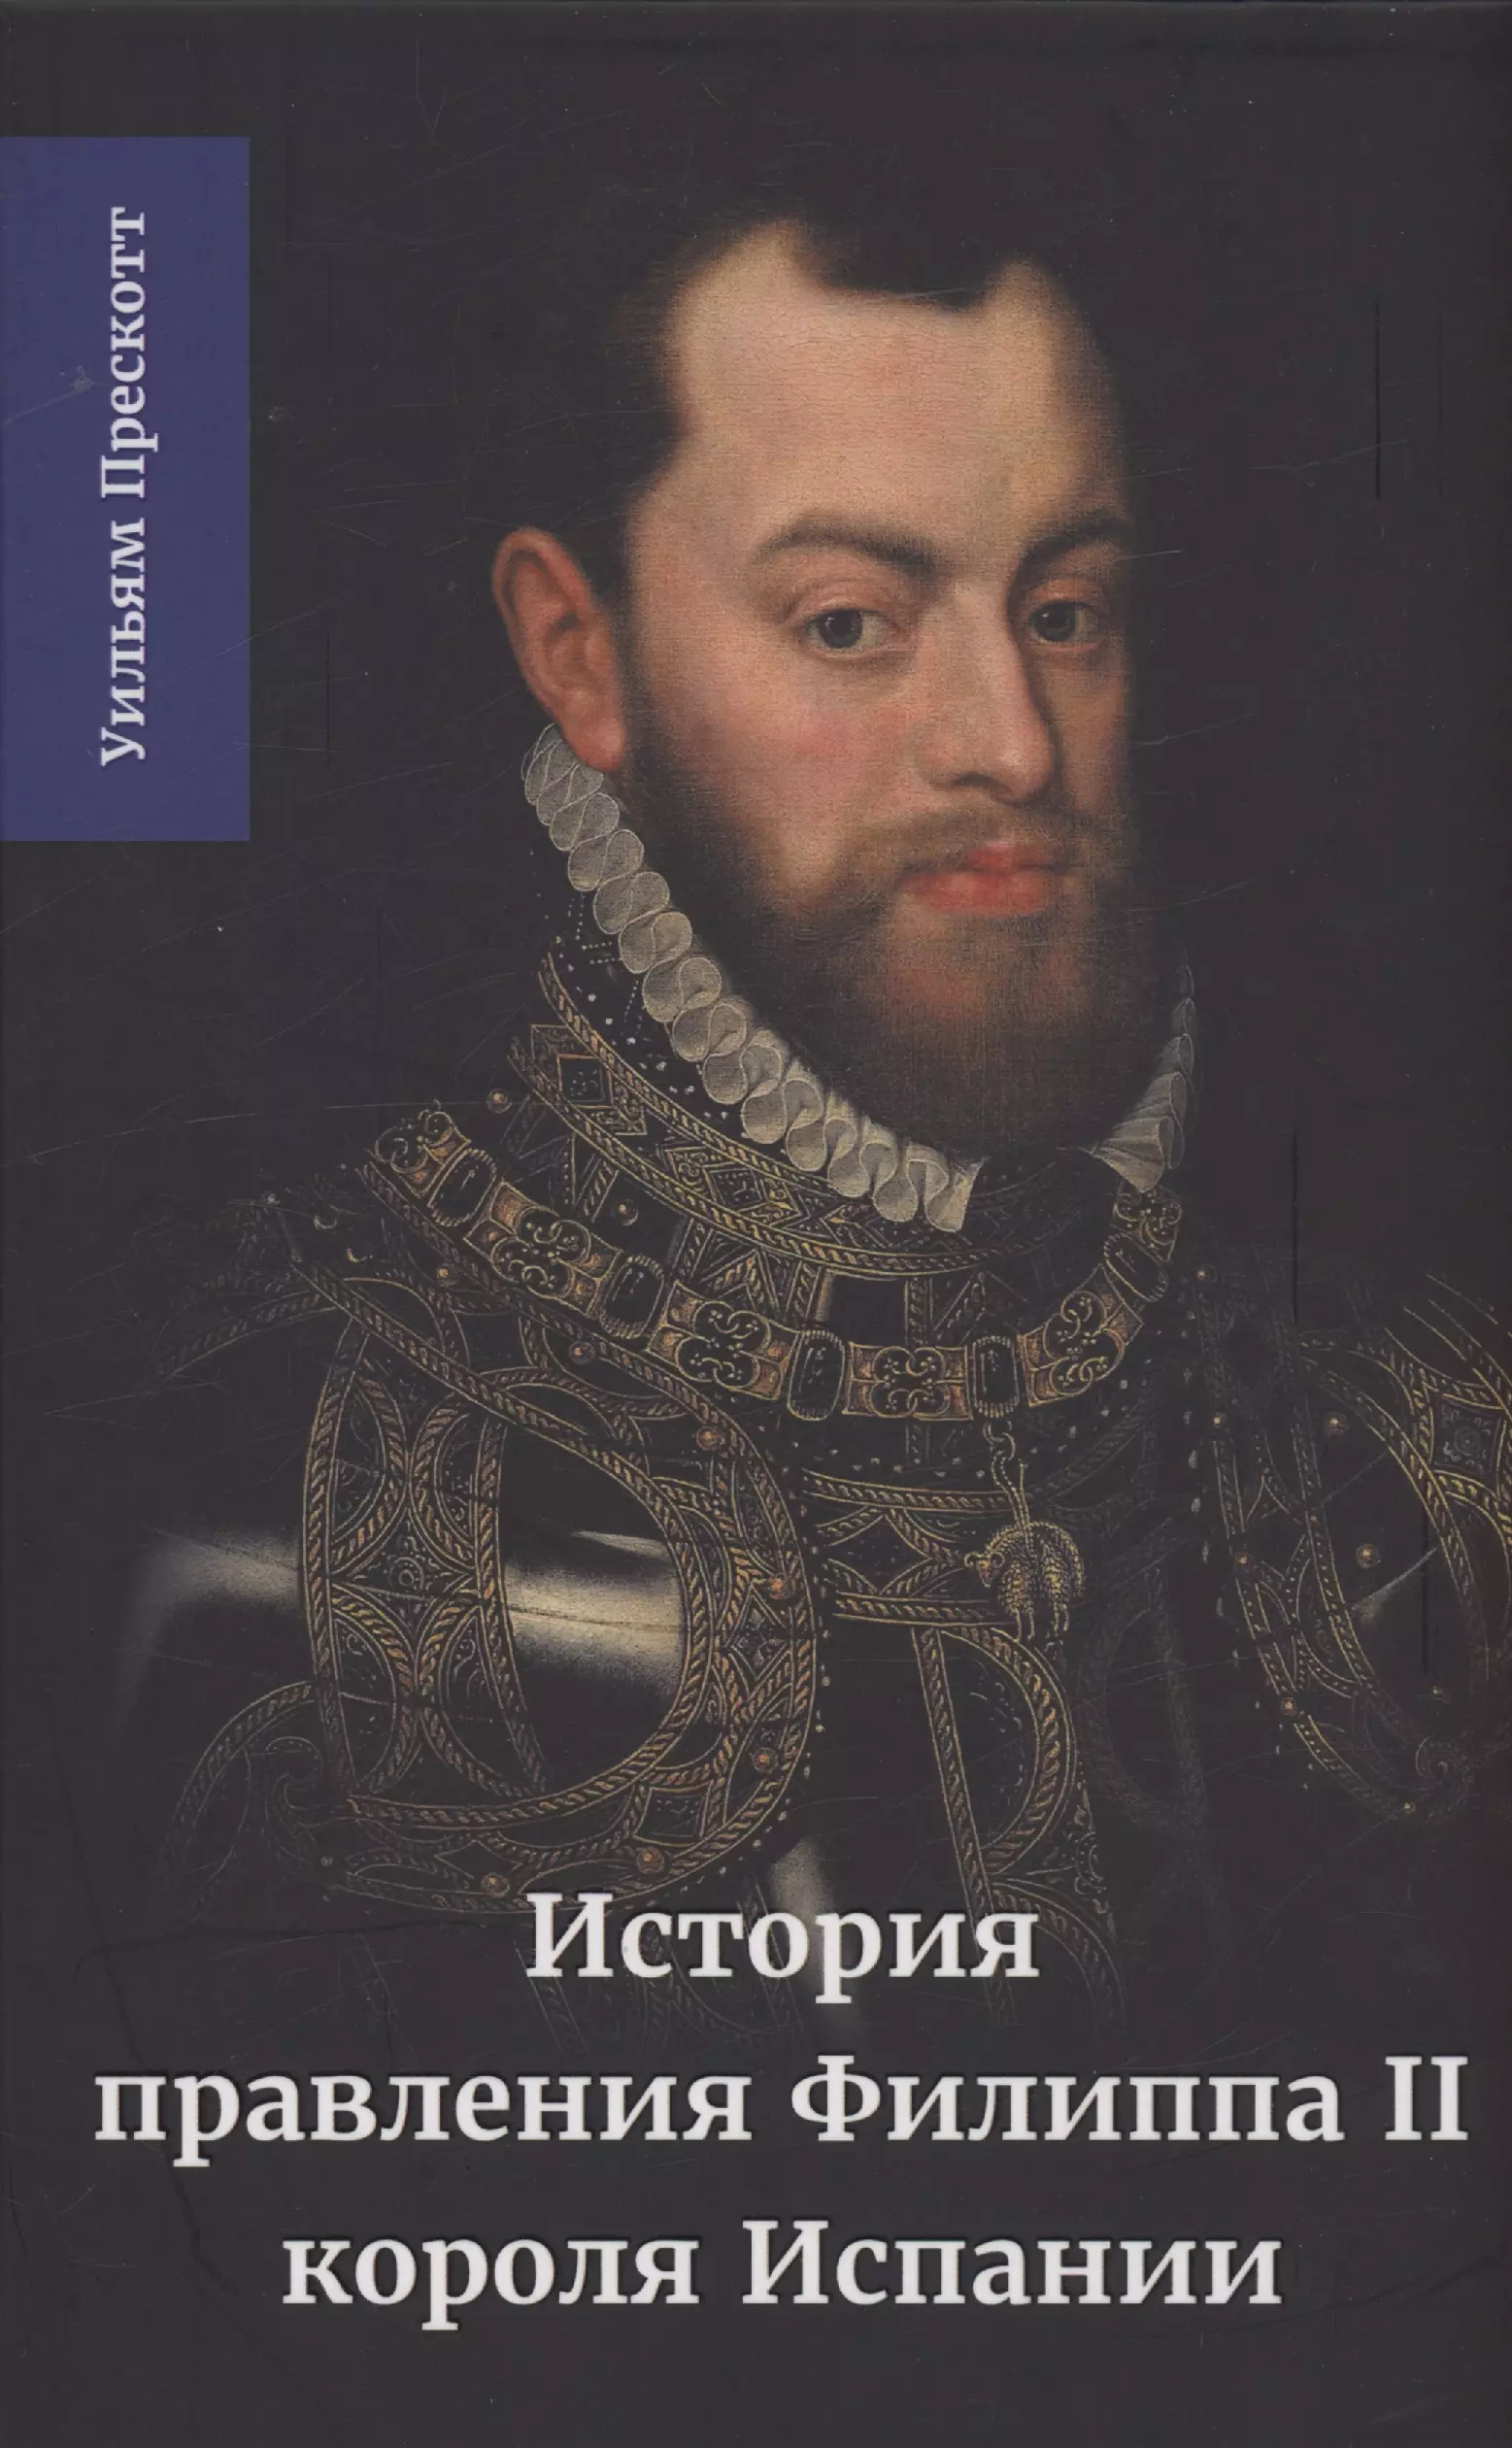 Прескотт Уильям - История правления Филиппа II, короля Испании. Часть 3